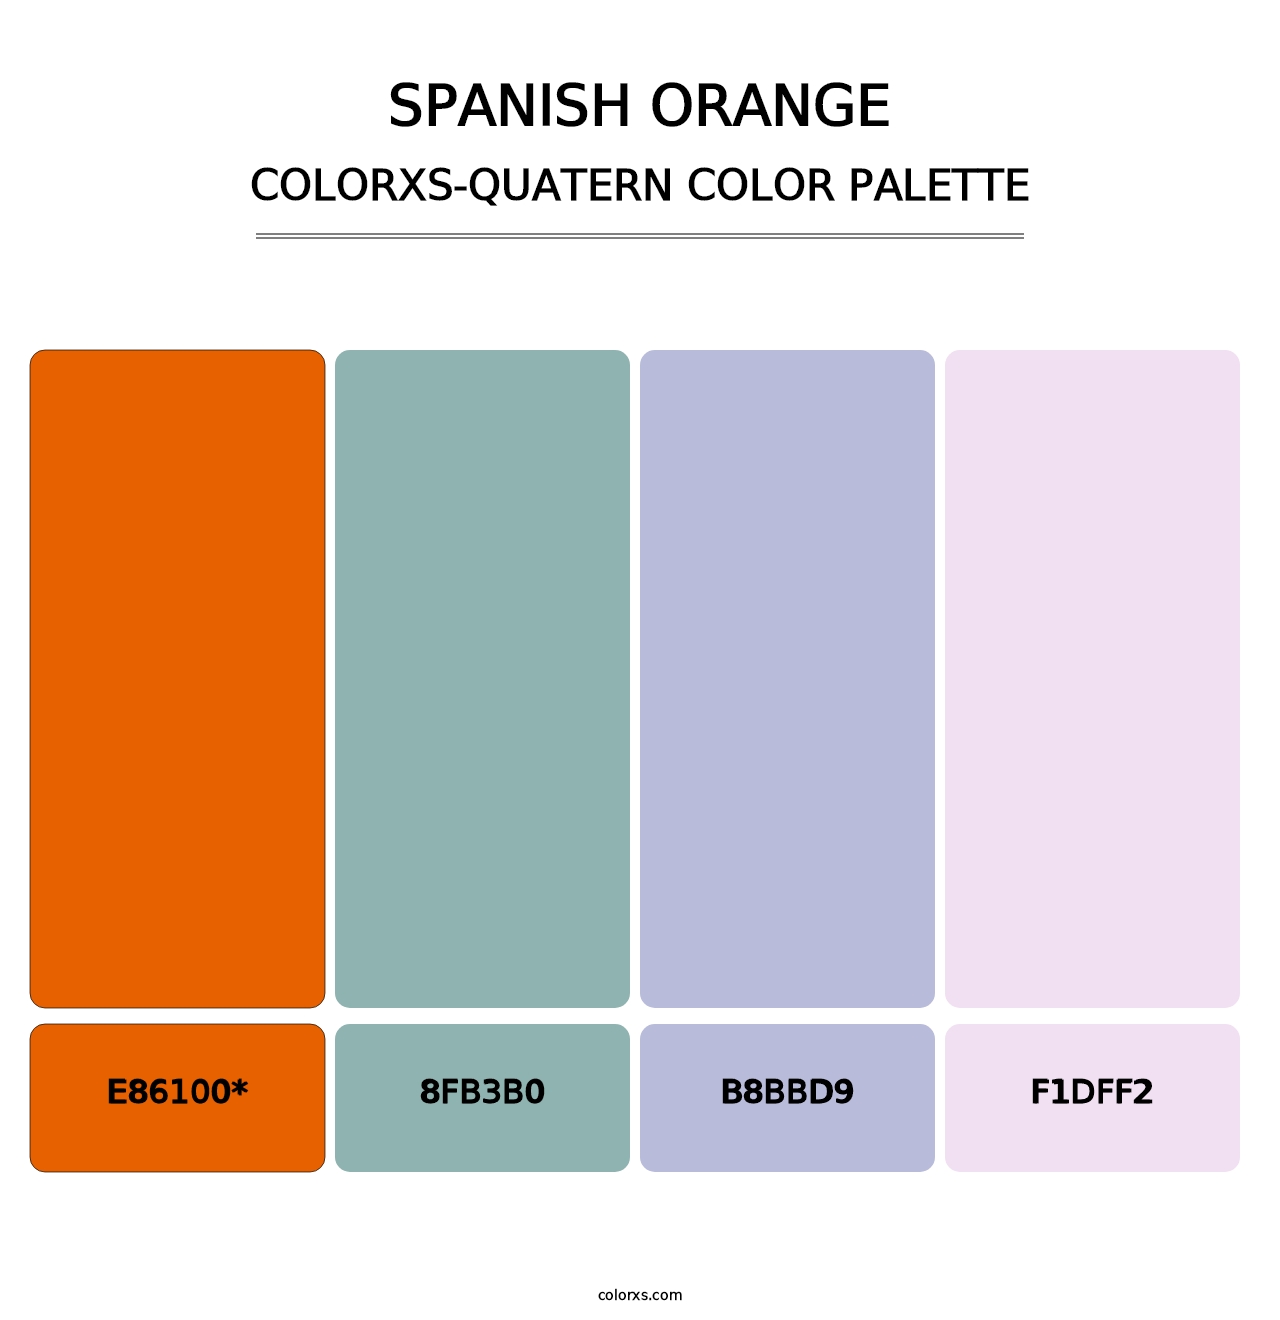 Spanish Orange - Colorxs Quatern Palette